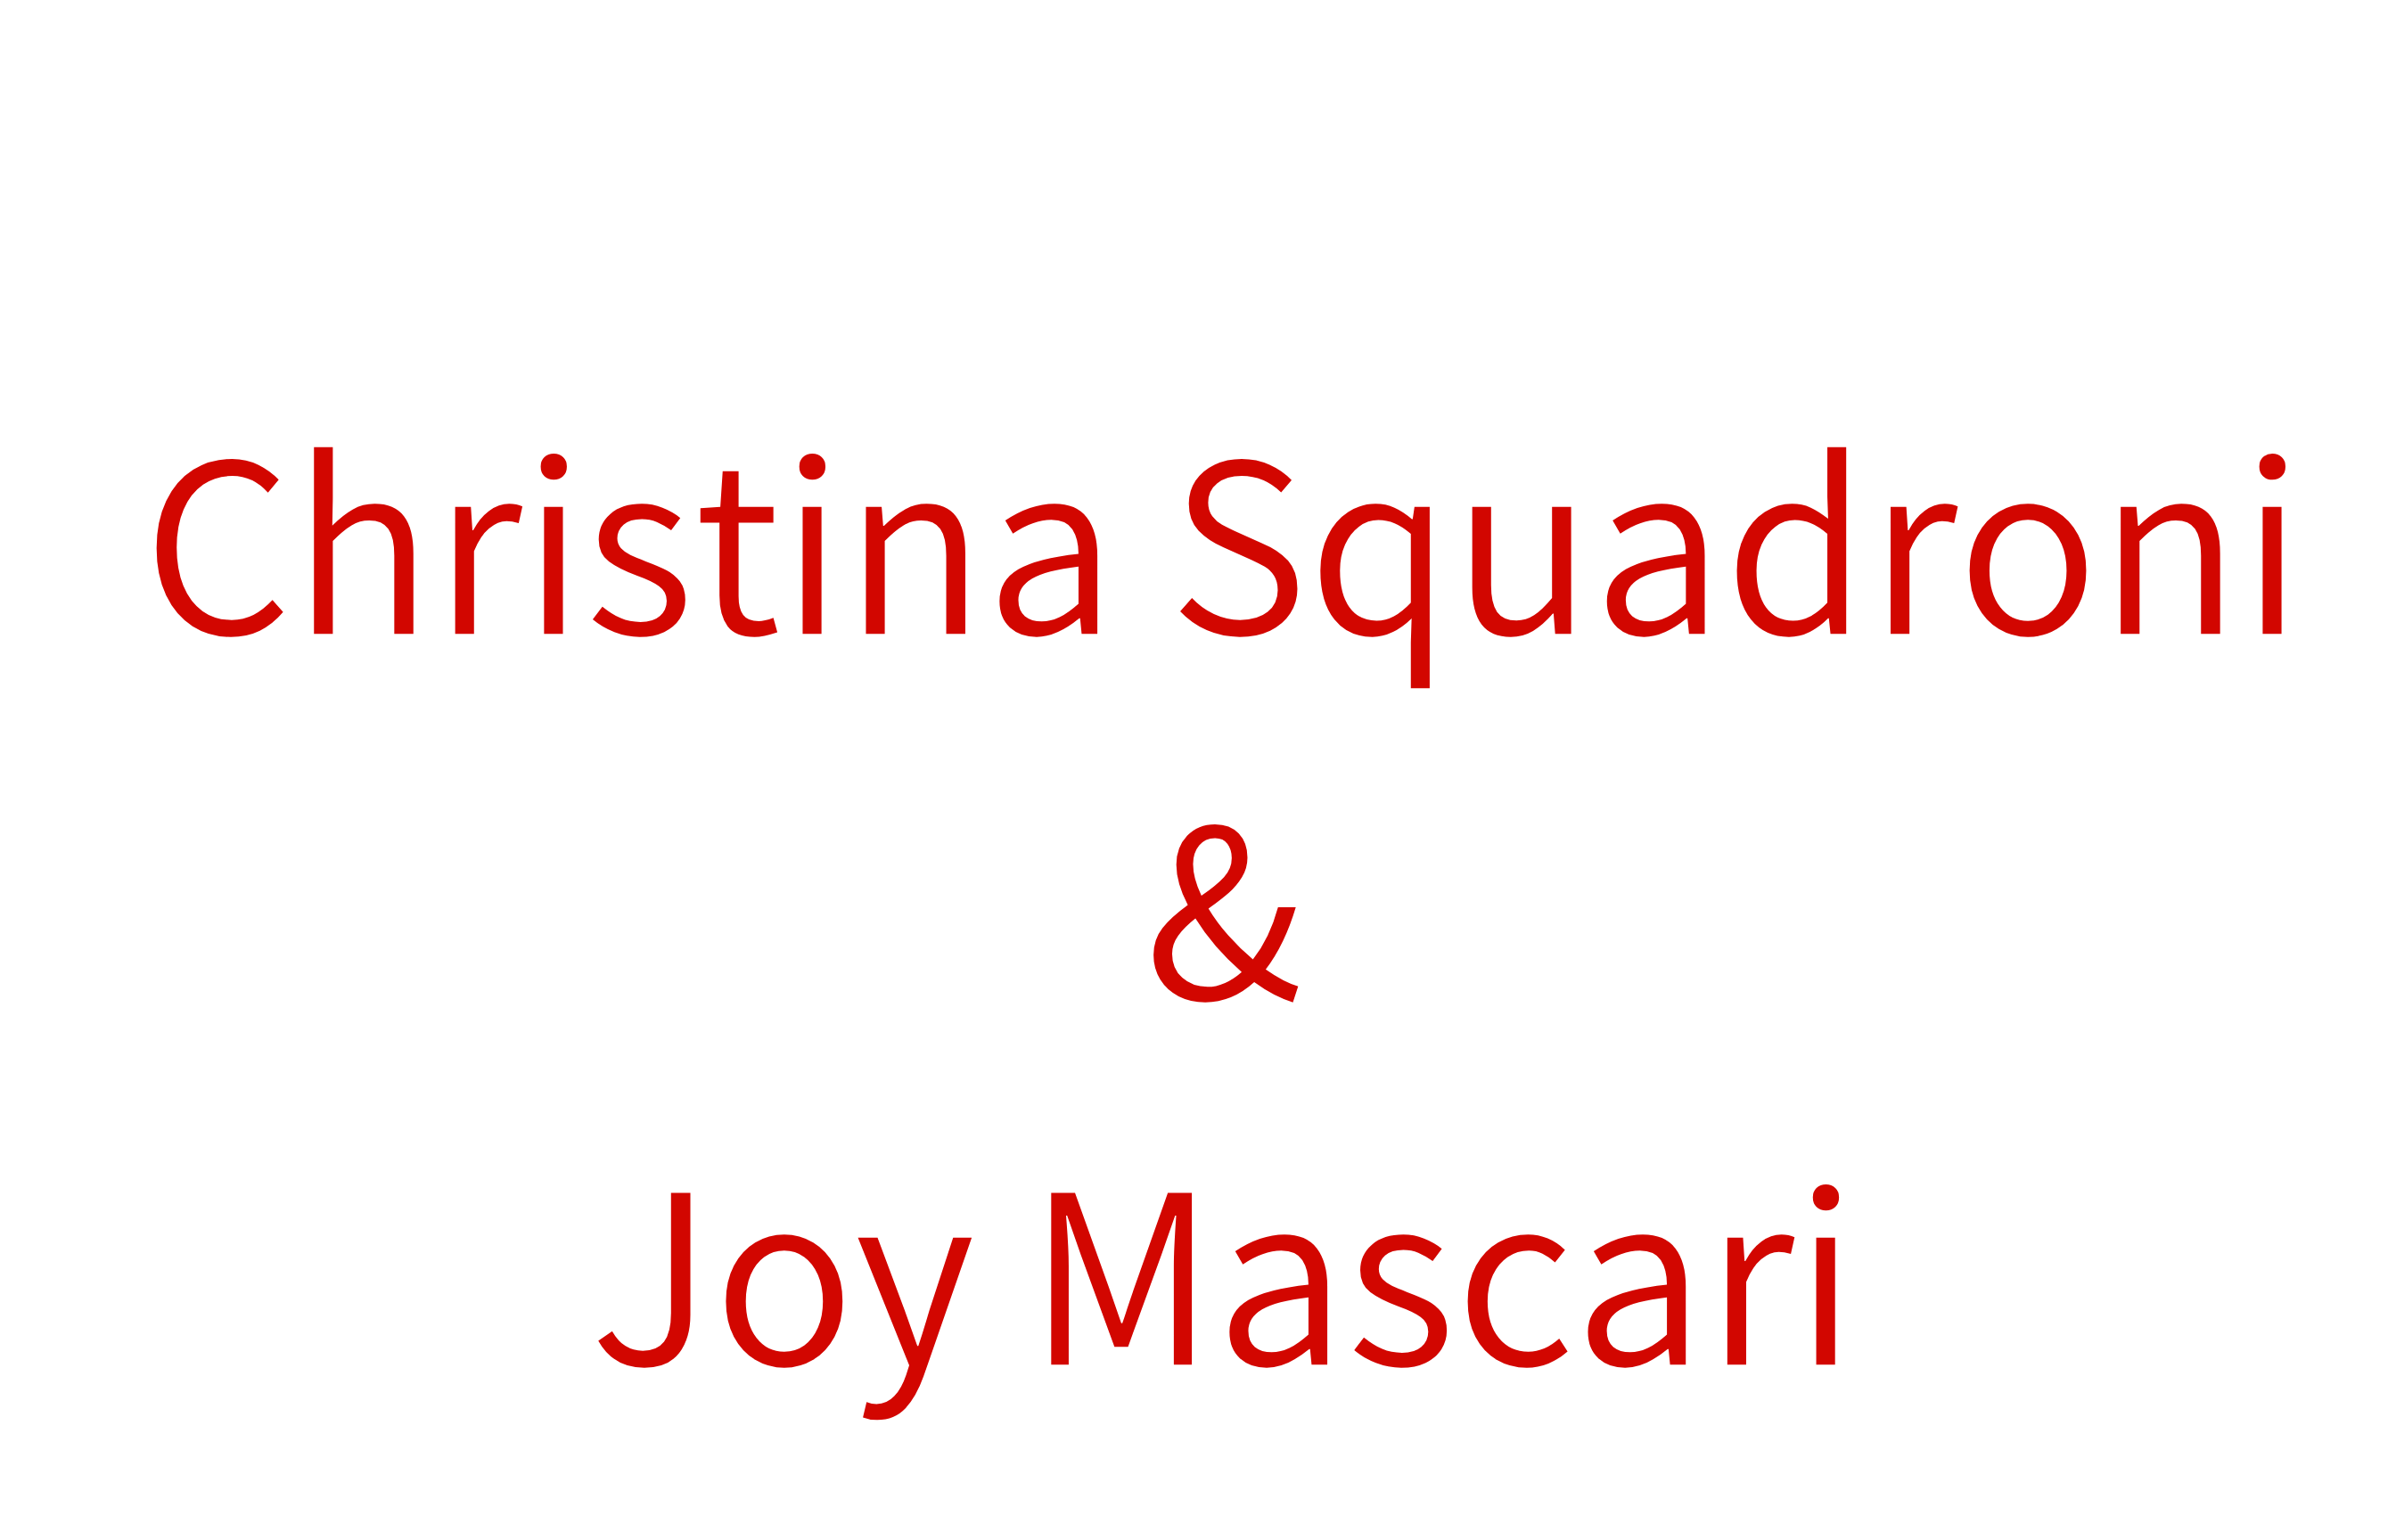 Christina Squadroni & Joy Mascari